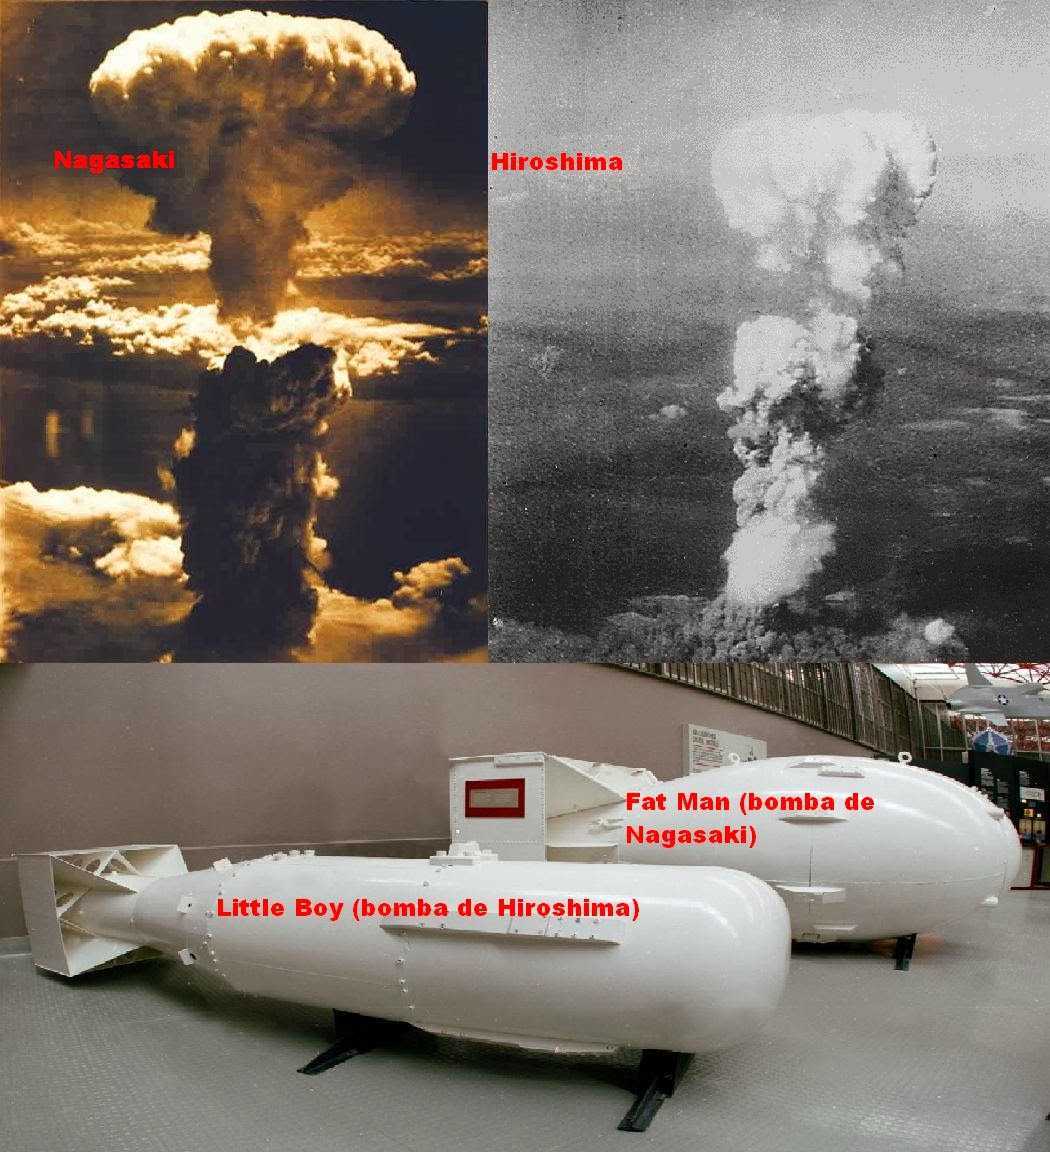 Когда сбросили бомбу на японию. Хиросима и Нагасаки атомная бомба. Нагасаки и Хиросима США атамнойьомба. Ядерное оружие США Хиросима Нагасаки. Япония 1945 Хиросима и Нагасаки.